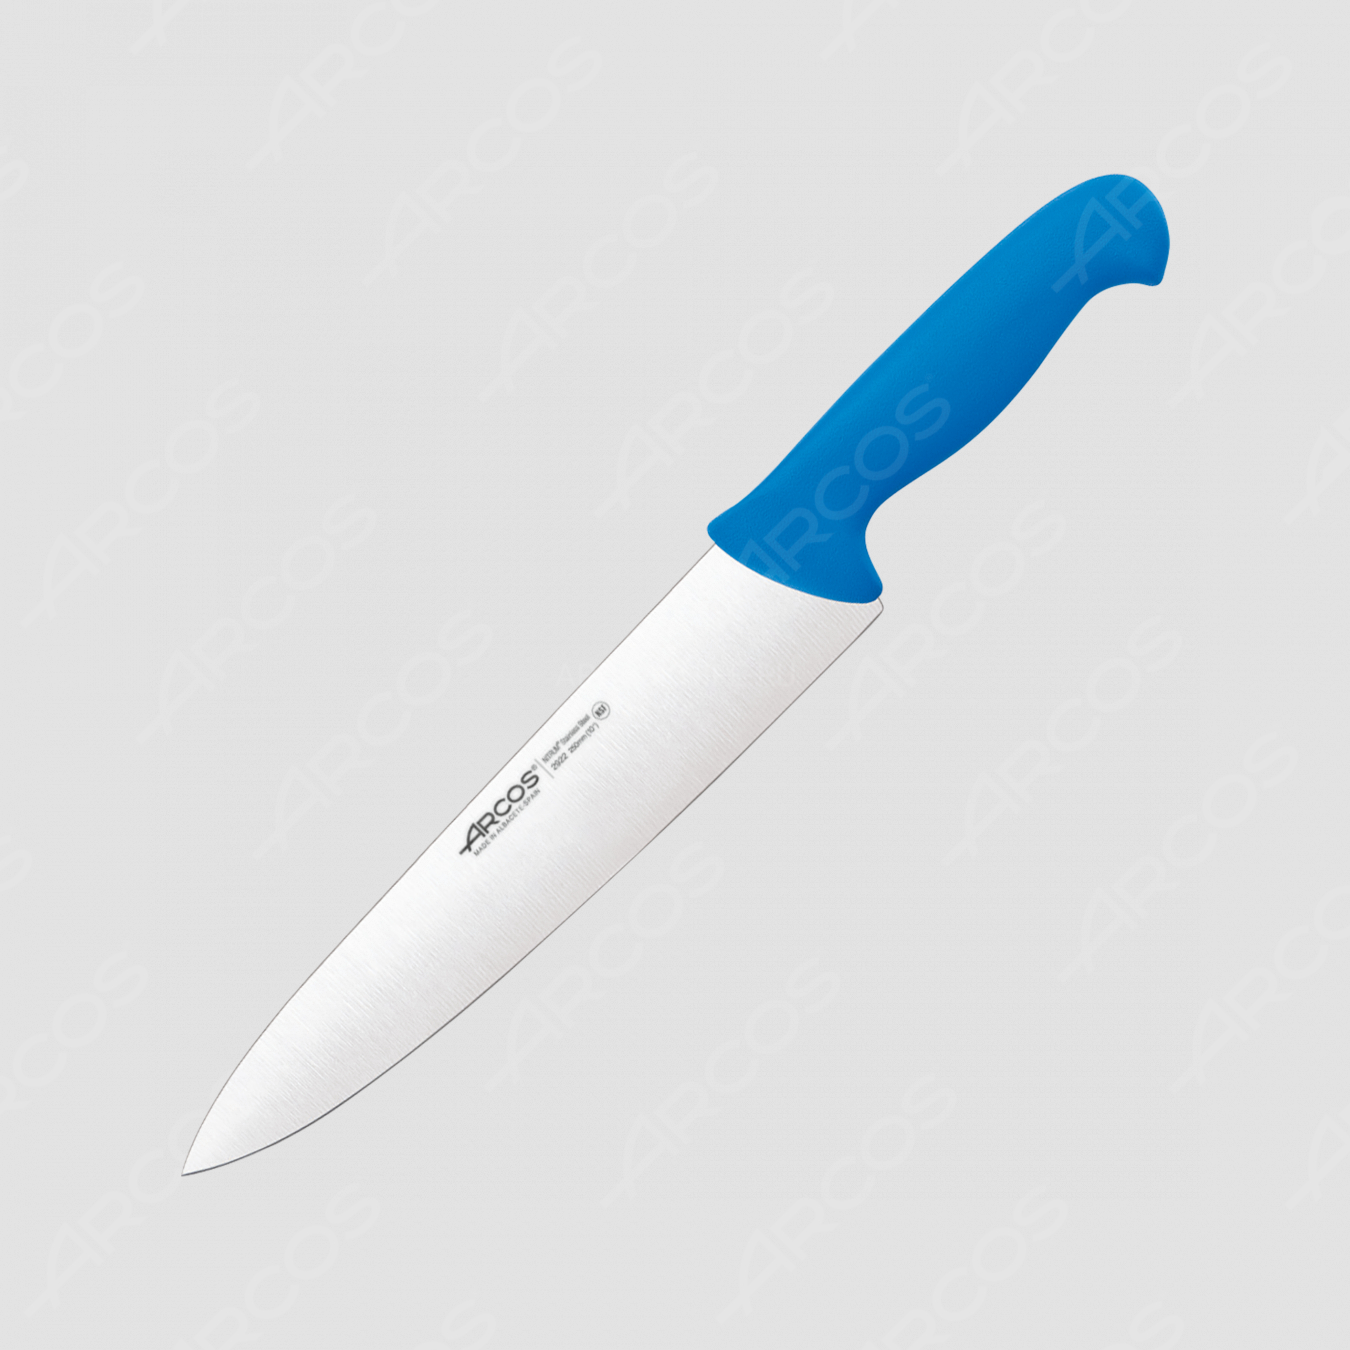 Нож кухонный поварской 25 см, рукоять голубая, серия 2900, ARCOS, Испания